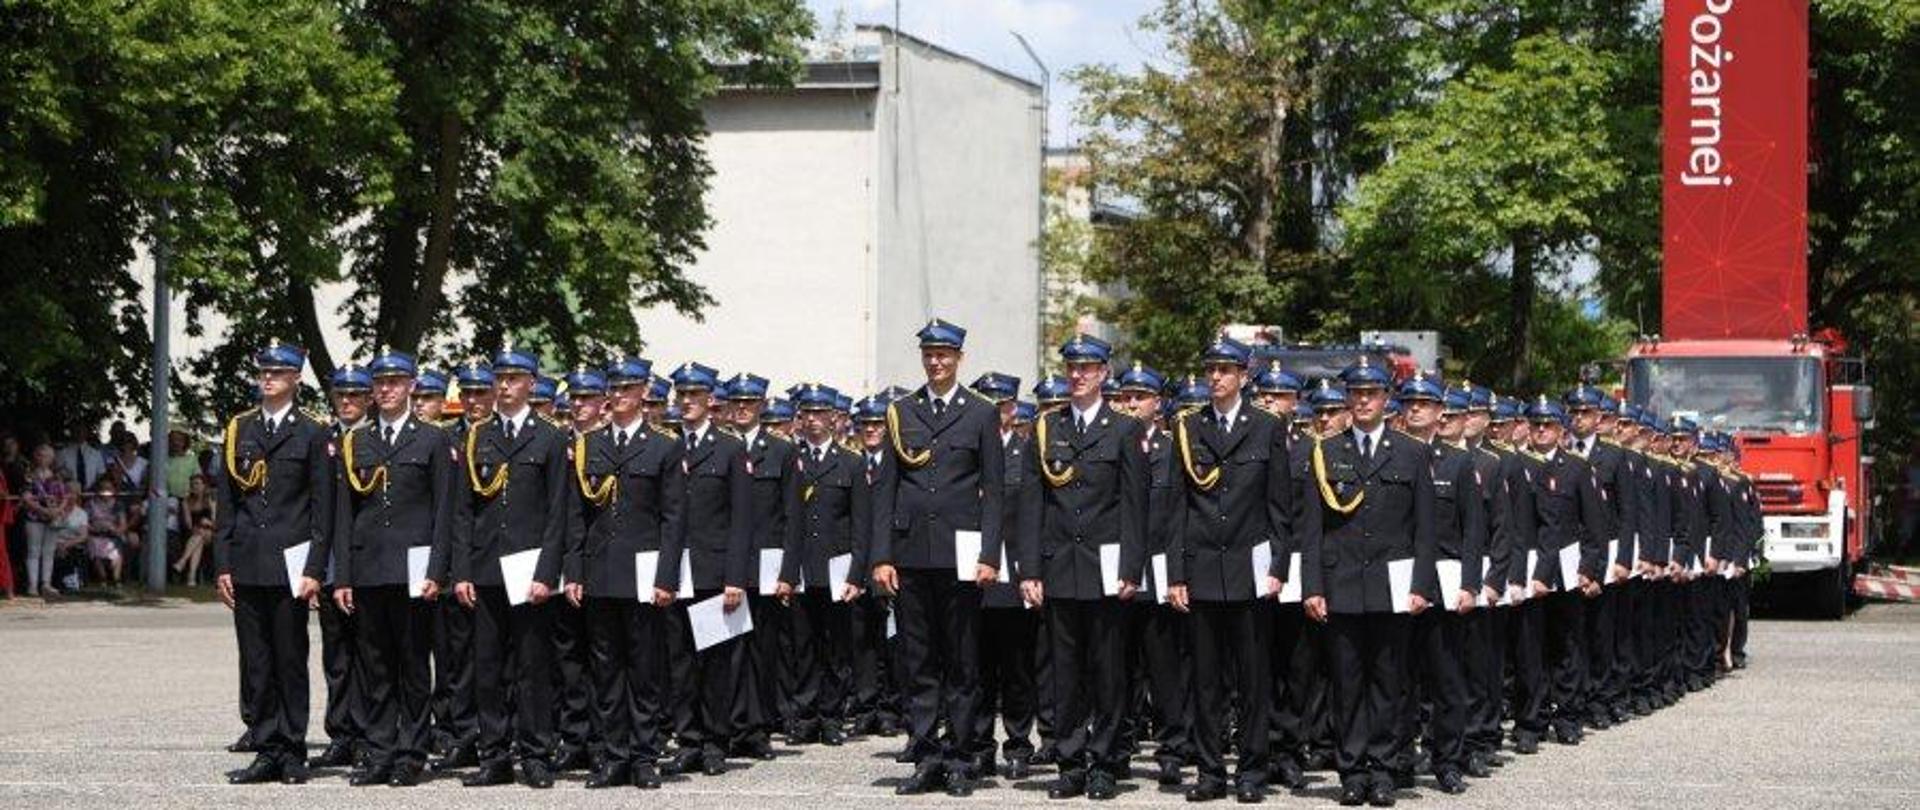 Funkcjonariusze Państwowej Straży pożarnej w mundurach wyjściowych w kolumnach czwórkowych na placu centralnej szkoły państwowej straży pożarnej w częstochowie.